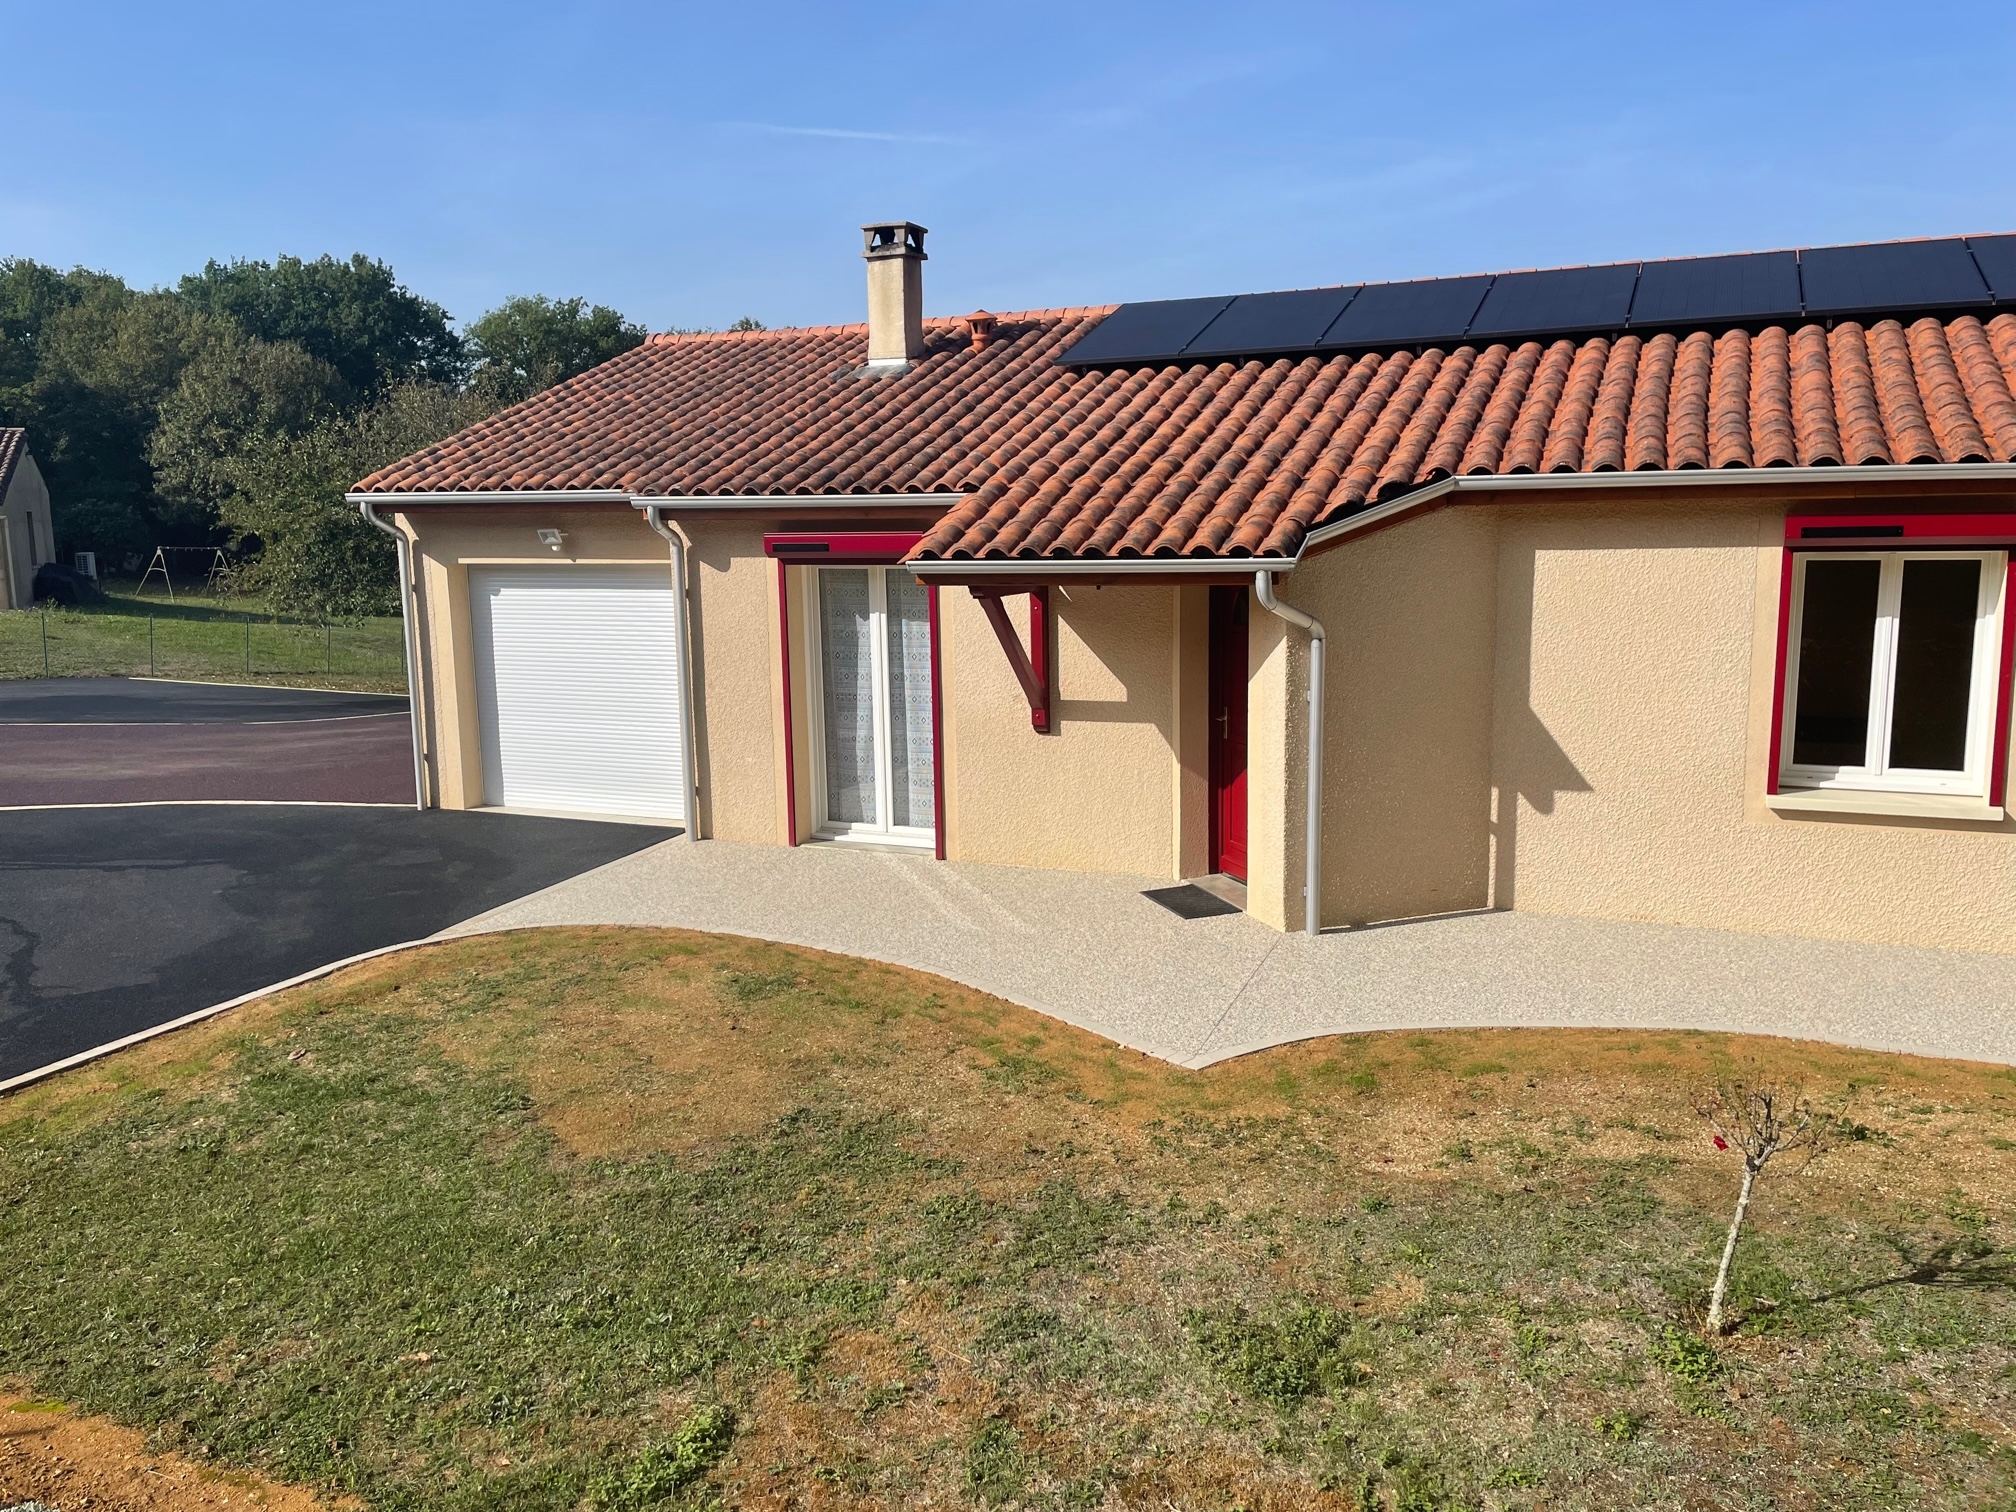 Ralisation Entre de maison en enrob  chaud et Hydrostar - Dordogne cre le 06/10/2022